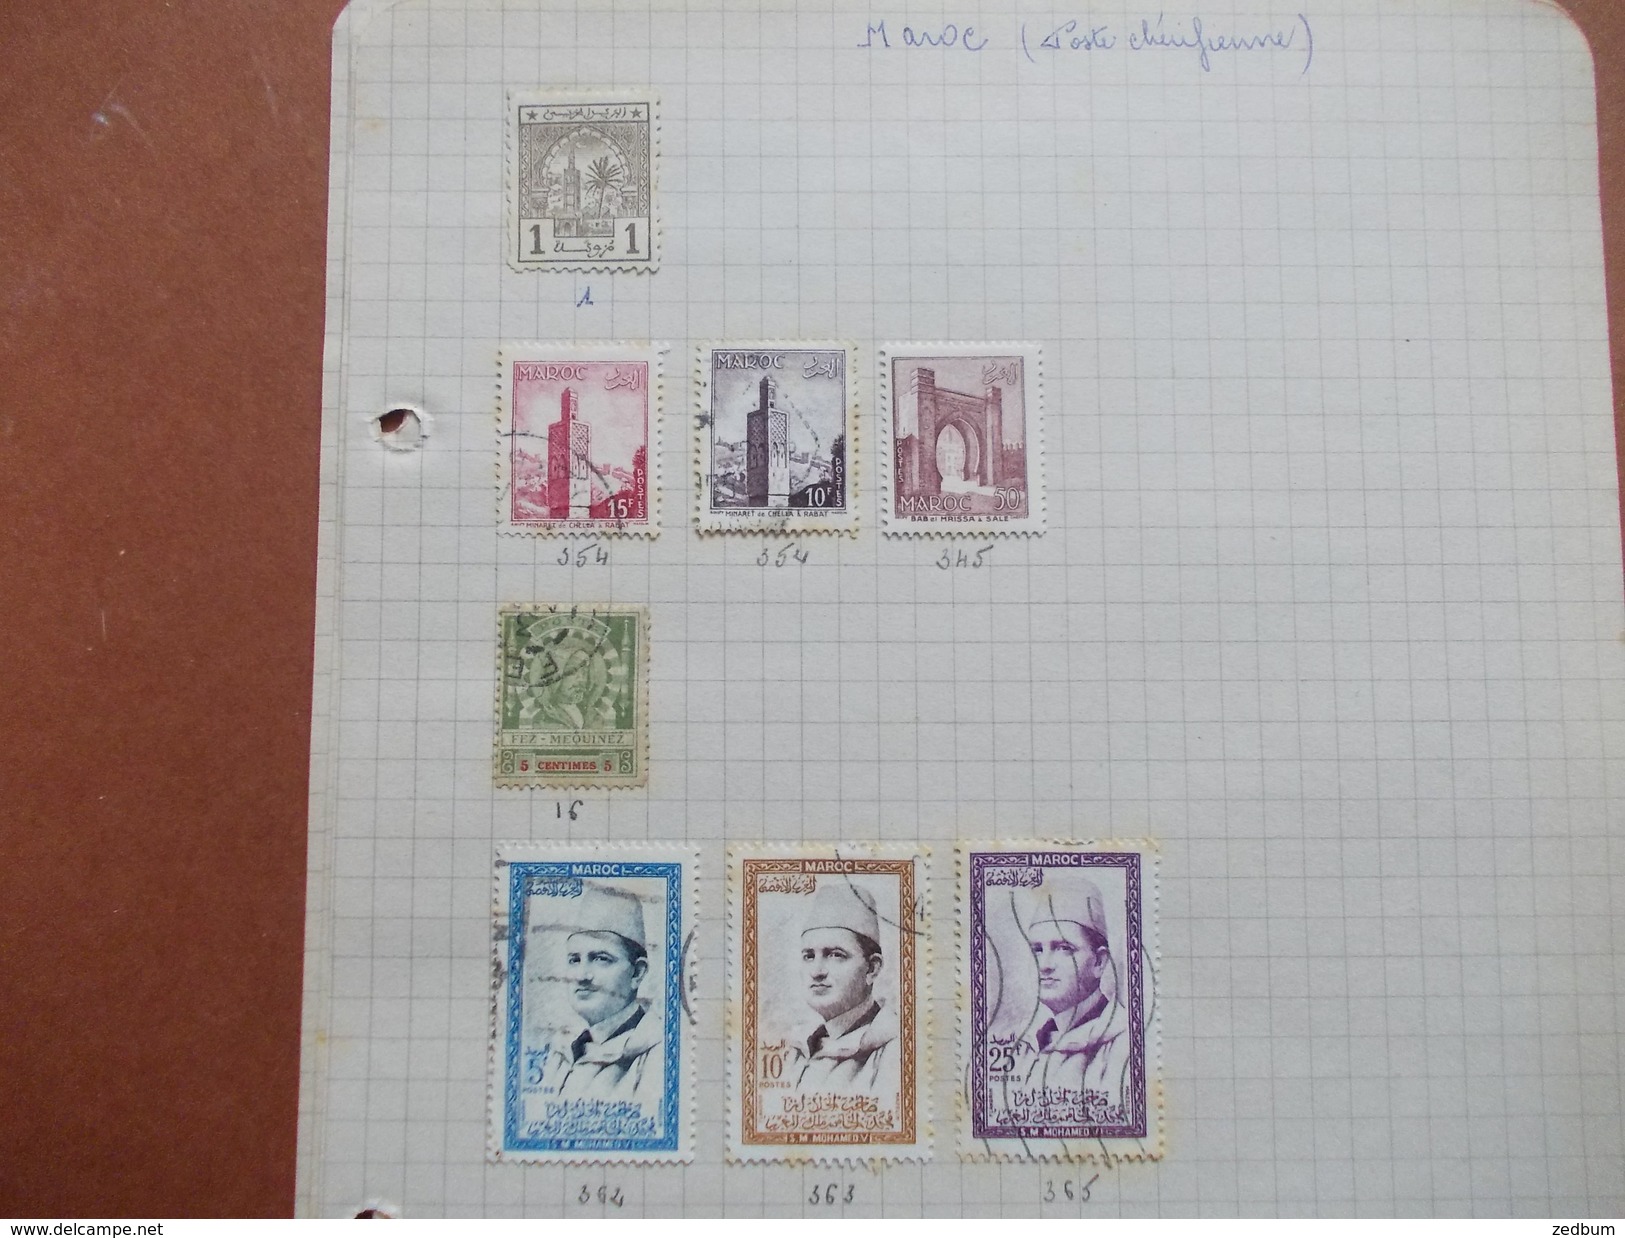 TIMBRES 7 Pages Maroc Algérie Tunisie Hongrie Laos Obock Sarre 23 Timbres Valeur 26.75 &euro; - Collections (sans Albums)